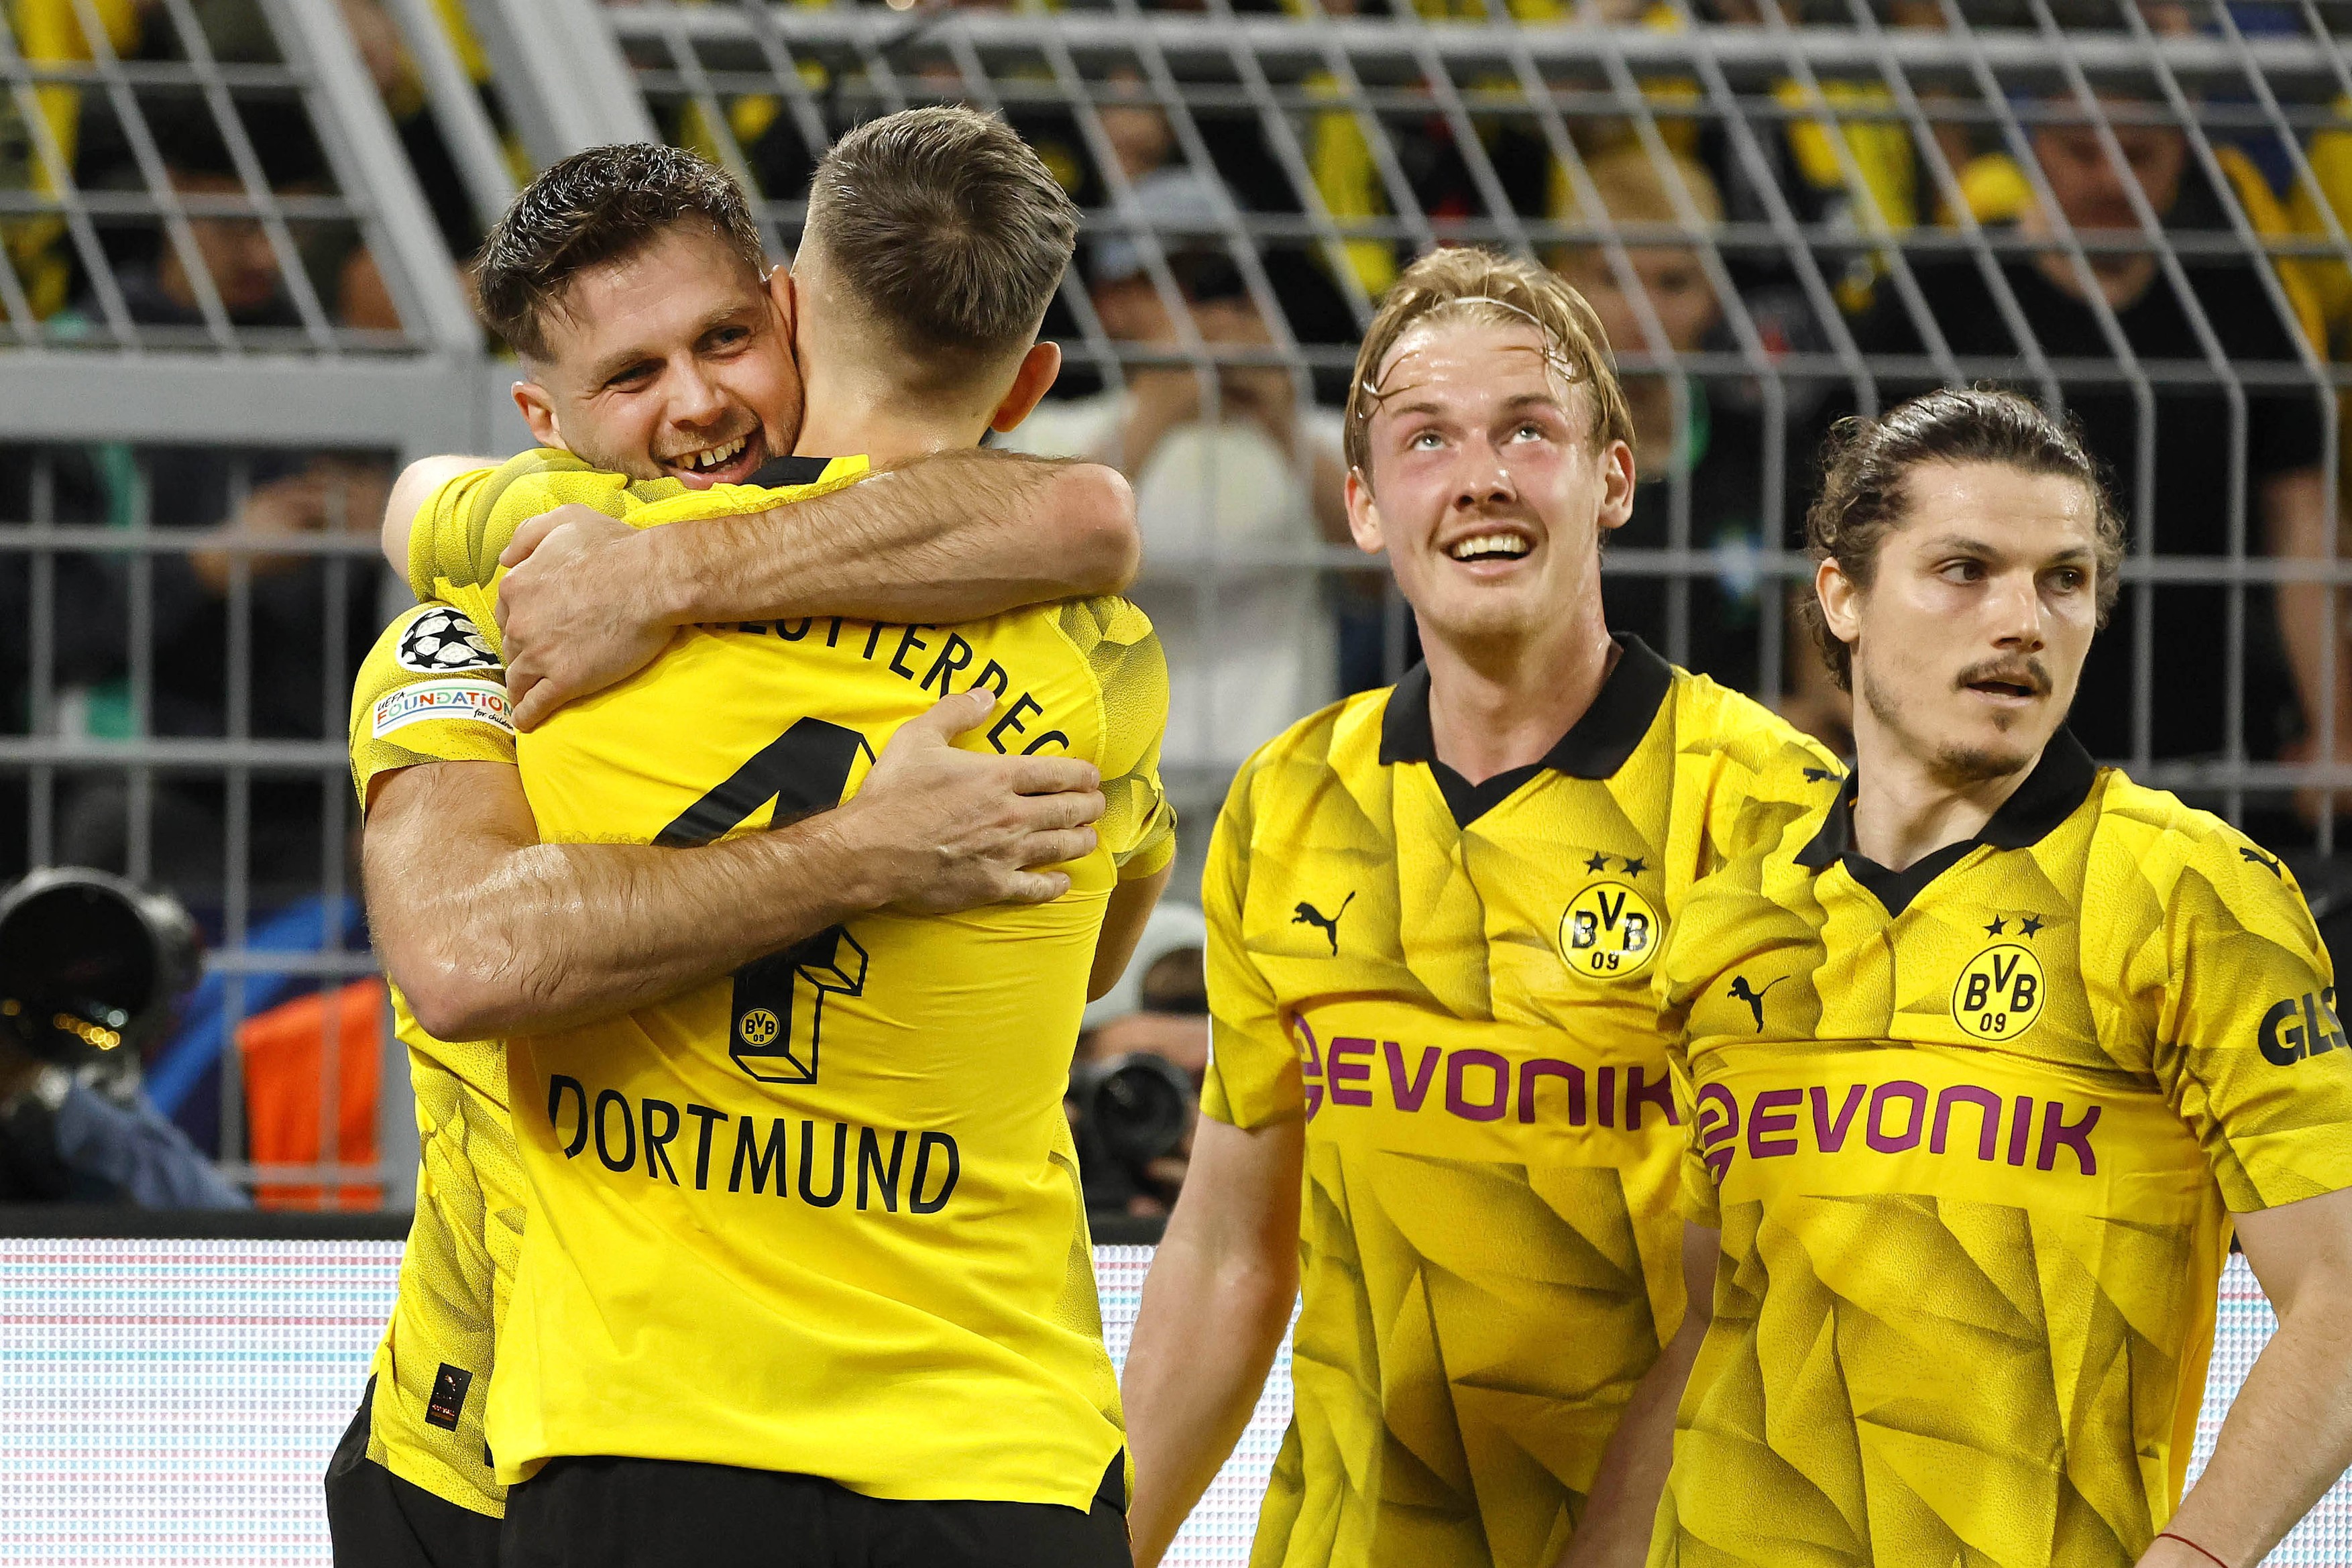 Concluziile trase de eroul lui Dortmund, după ce a adus victoria cu PSG: ”Rămânem umili”